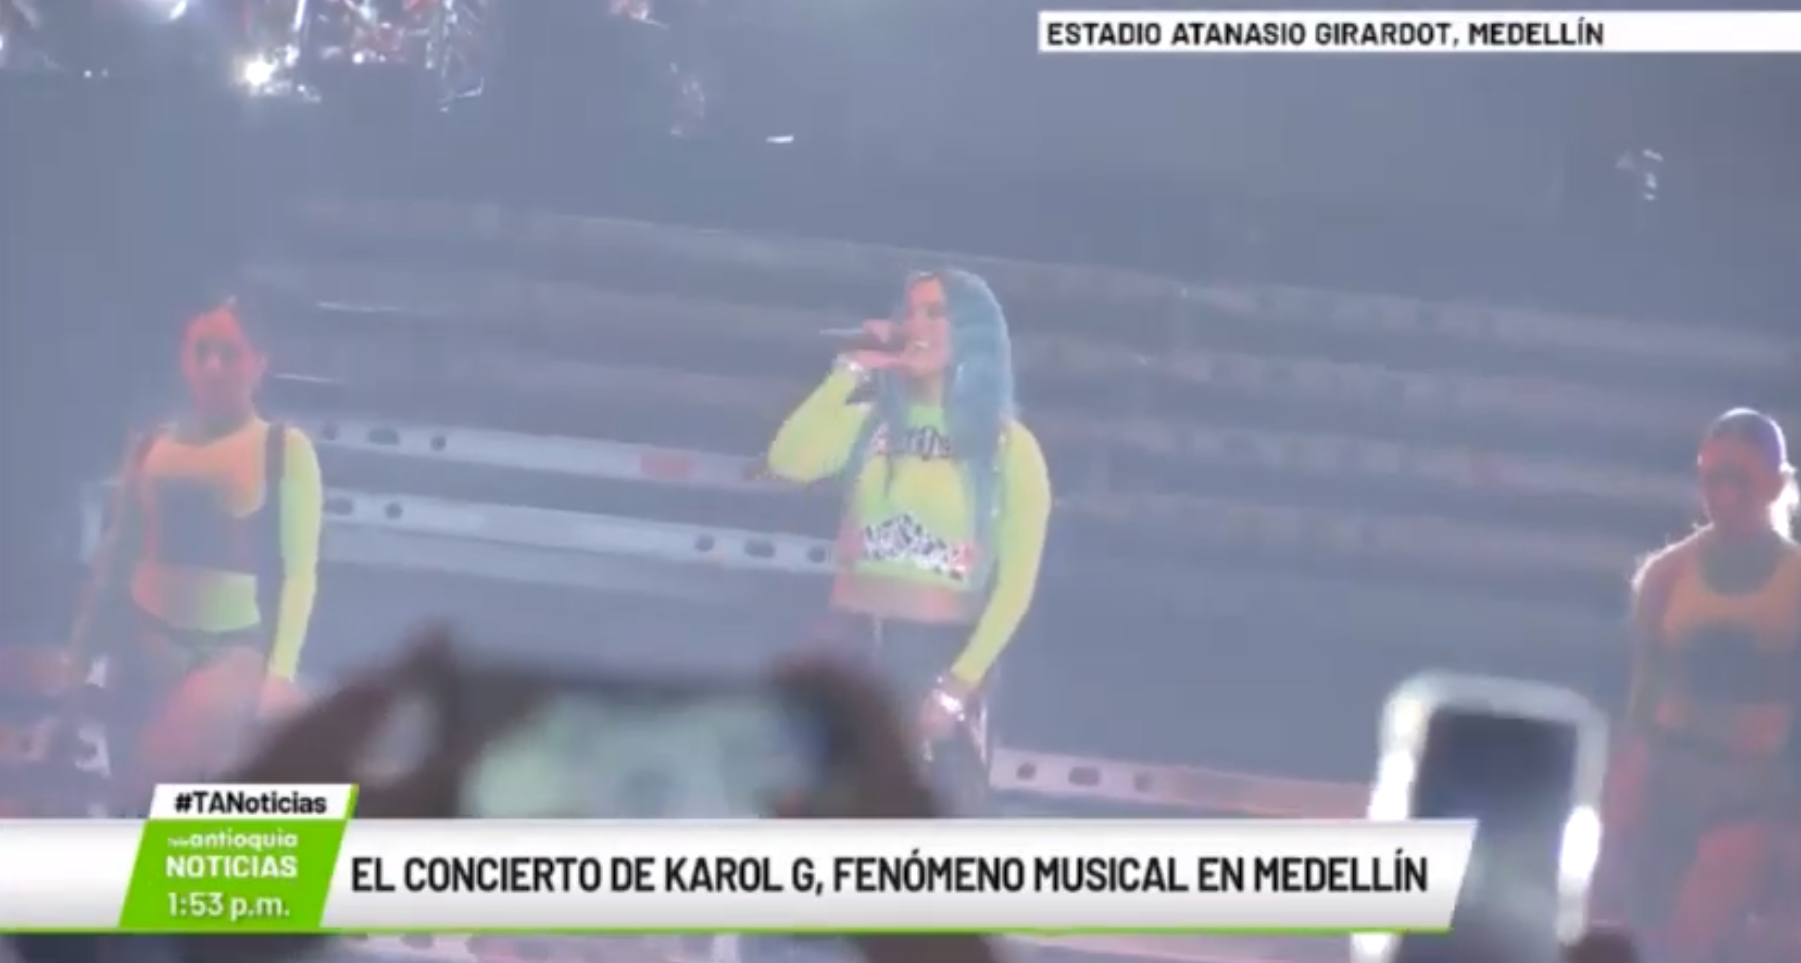 El concierto de karol G, fenómeno musical en Medellín